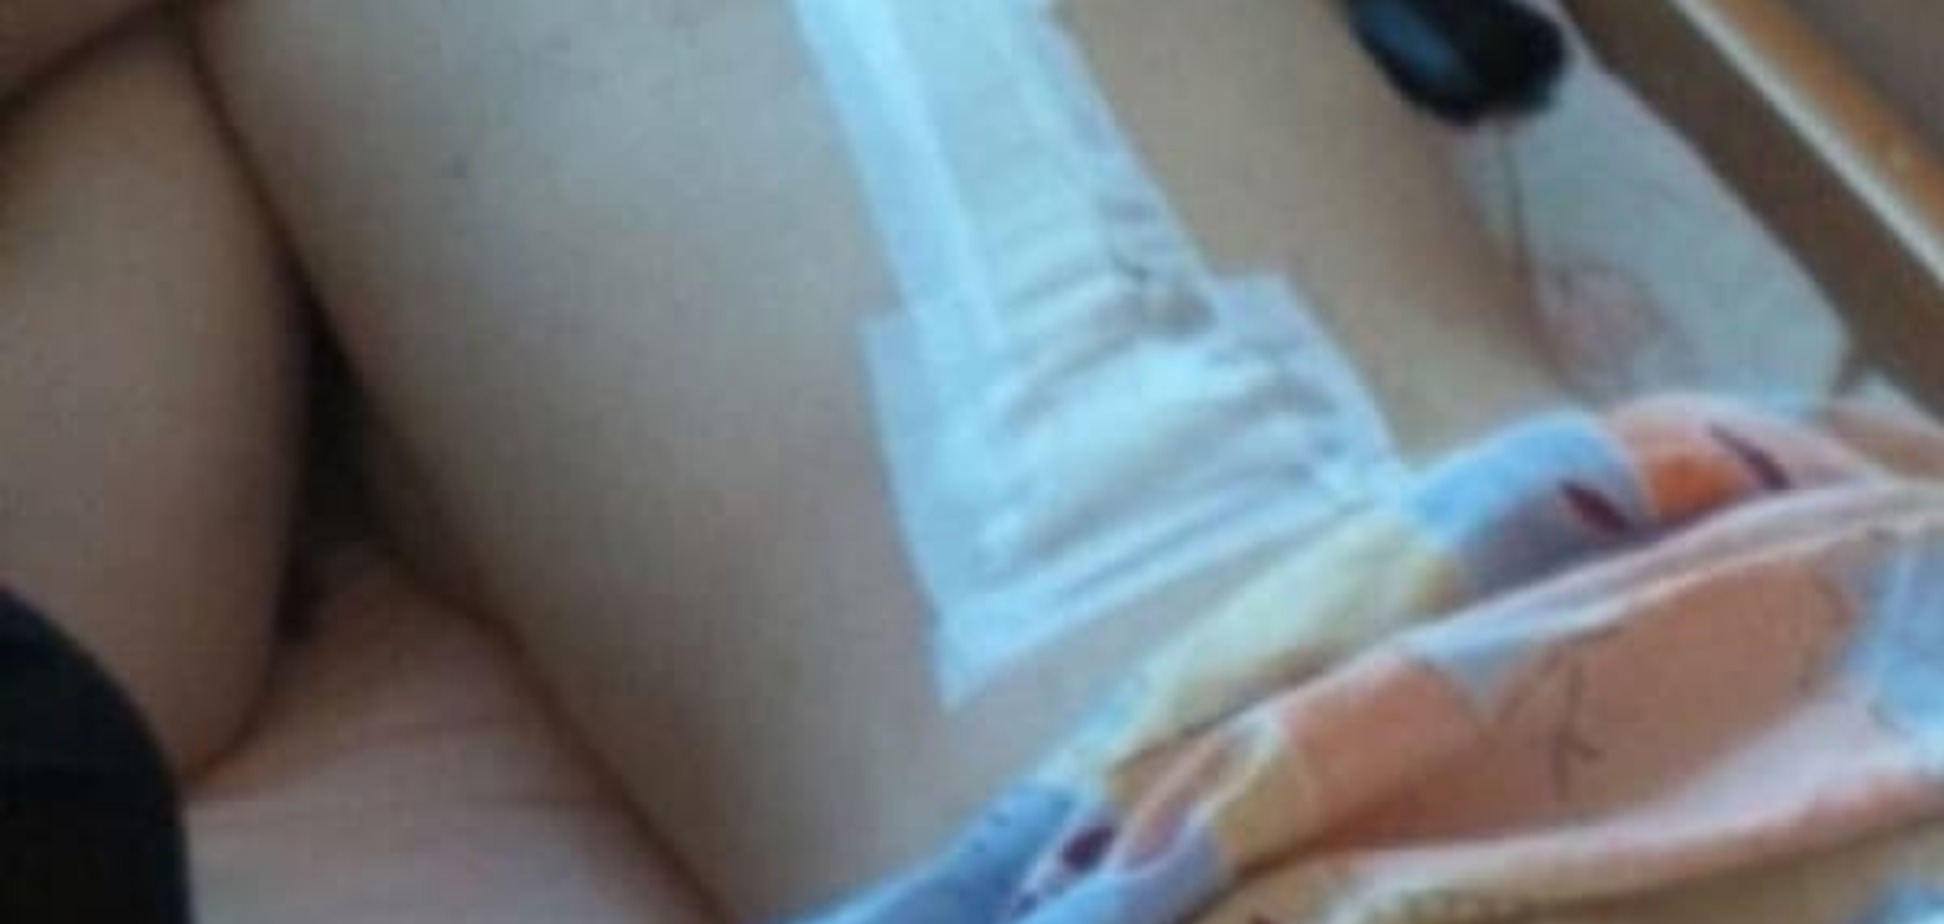 Трагедия на отдыхе:  в Одессе серьезно травмировалась  женщина. Фото